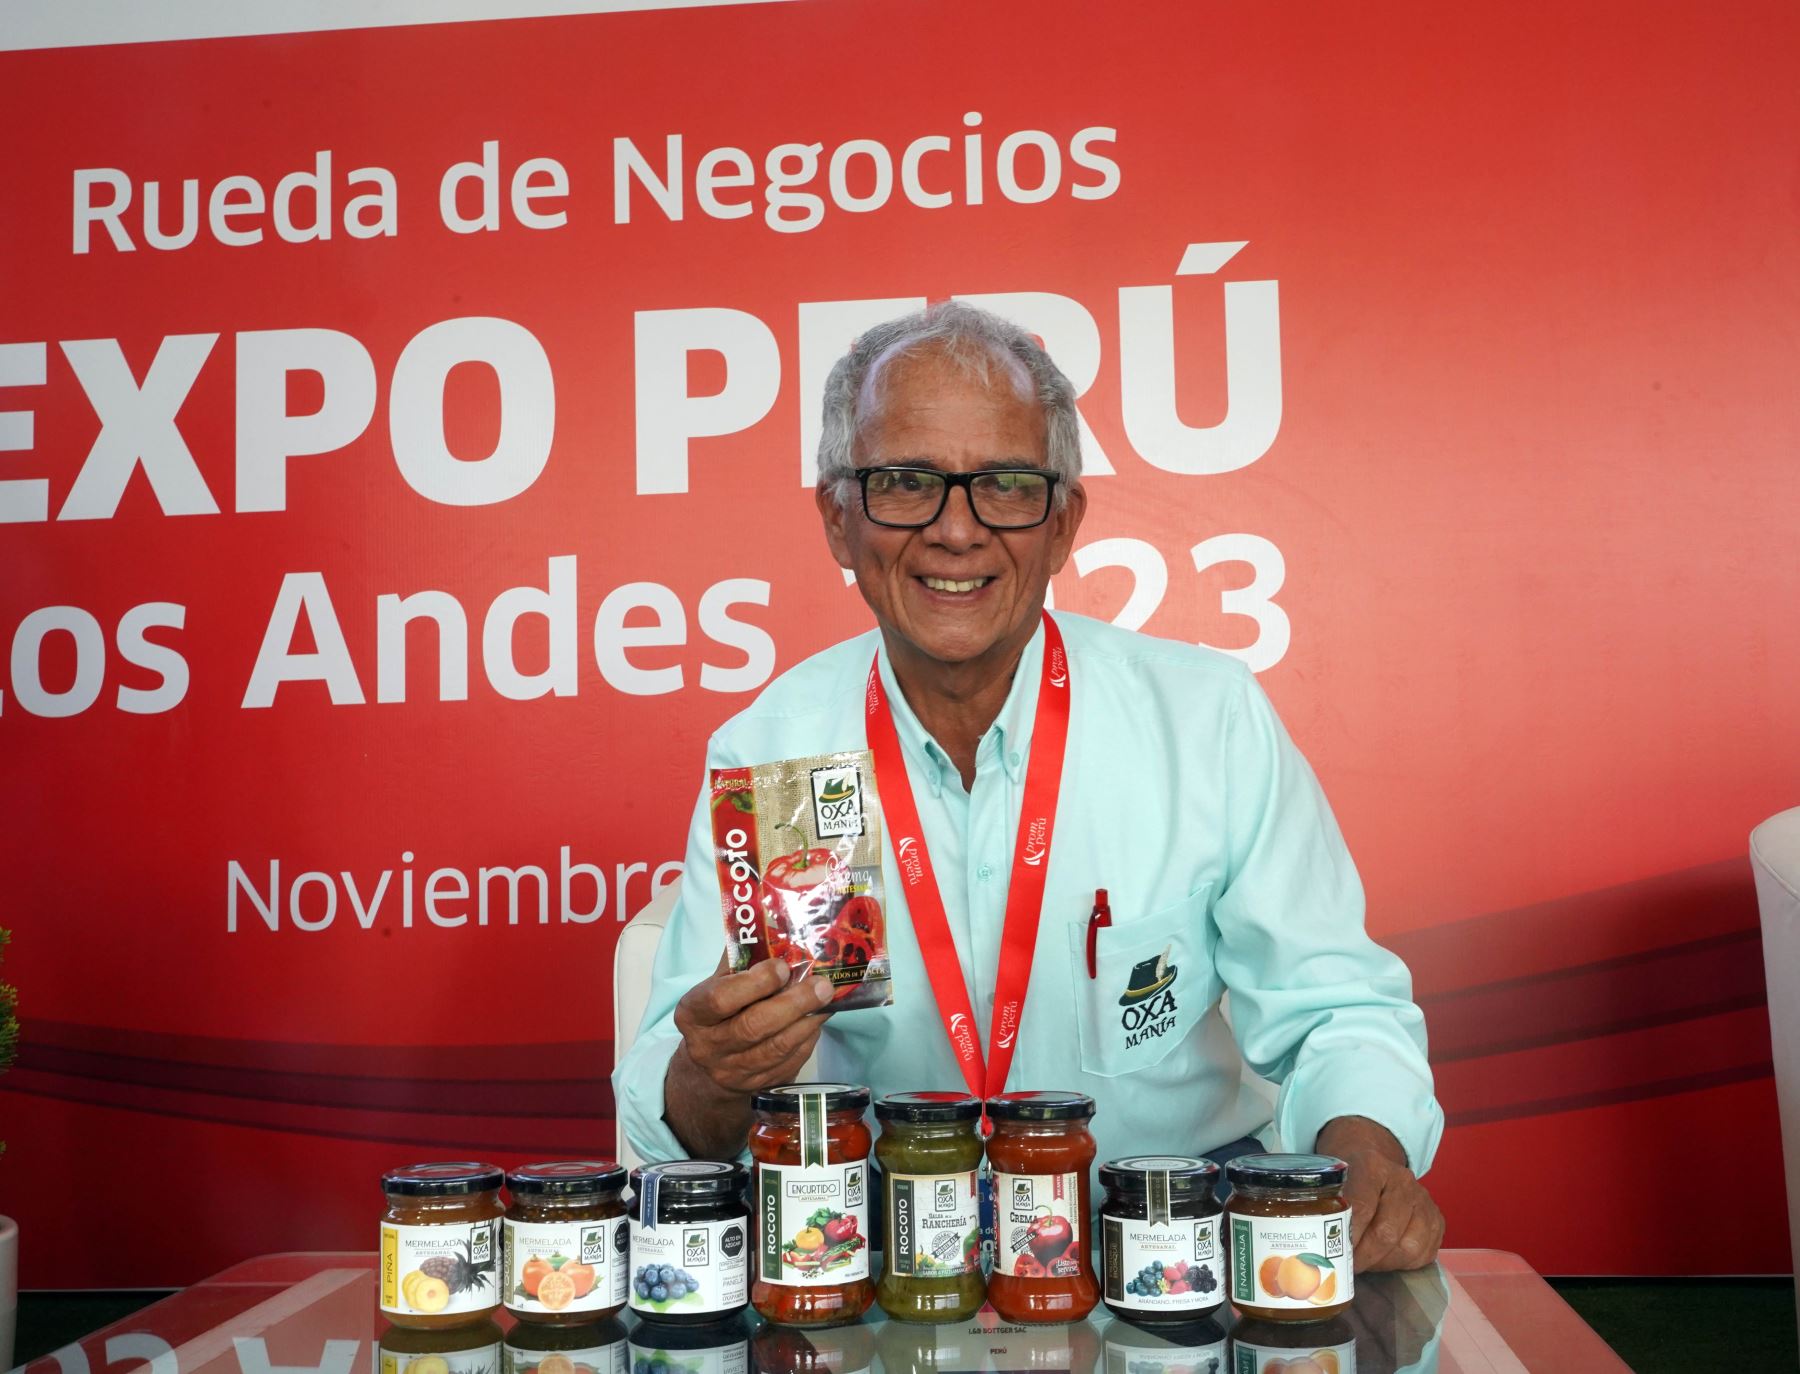 Mermelada de rocoto, conoce el innovador producto que es sensación en Expo Perú Los Andes